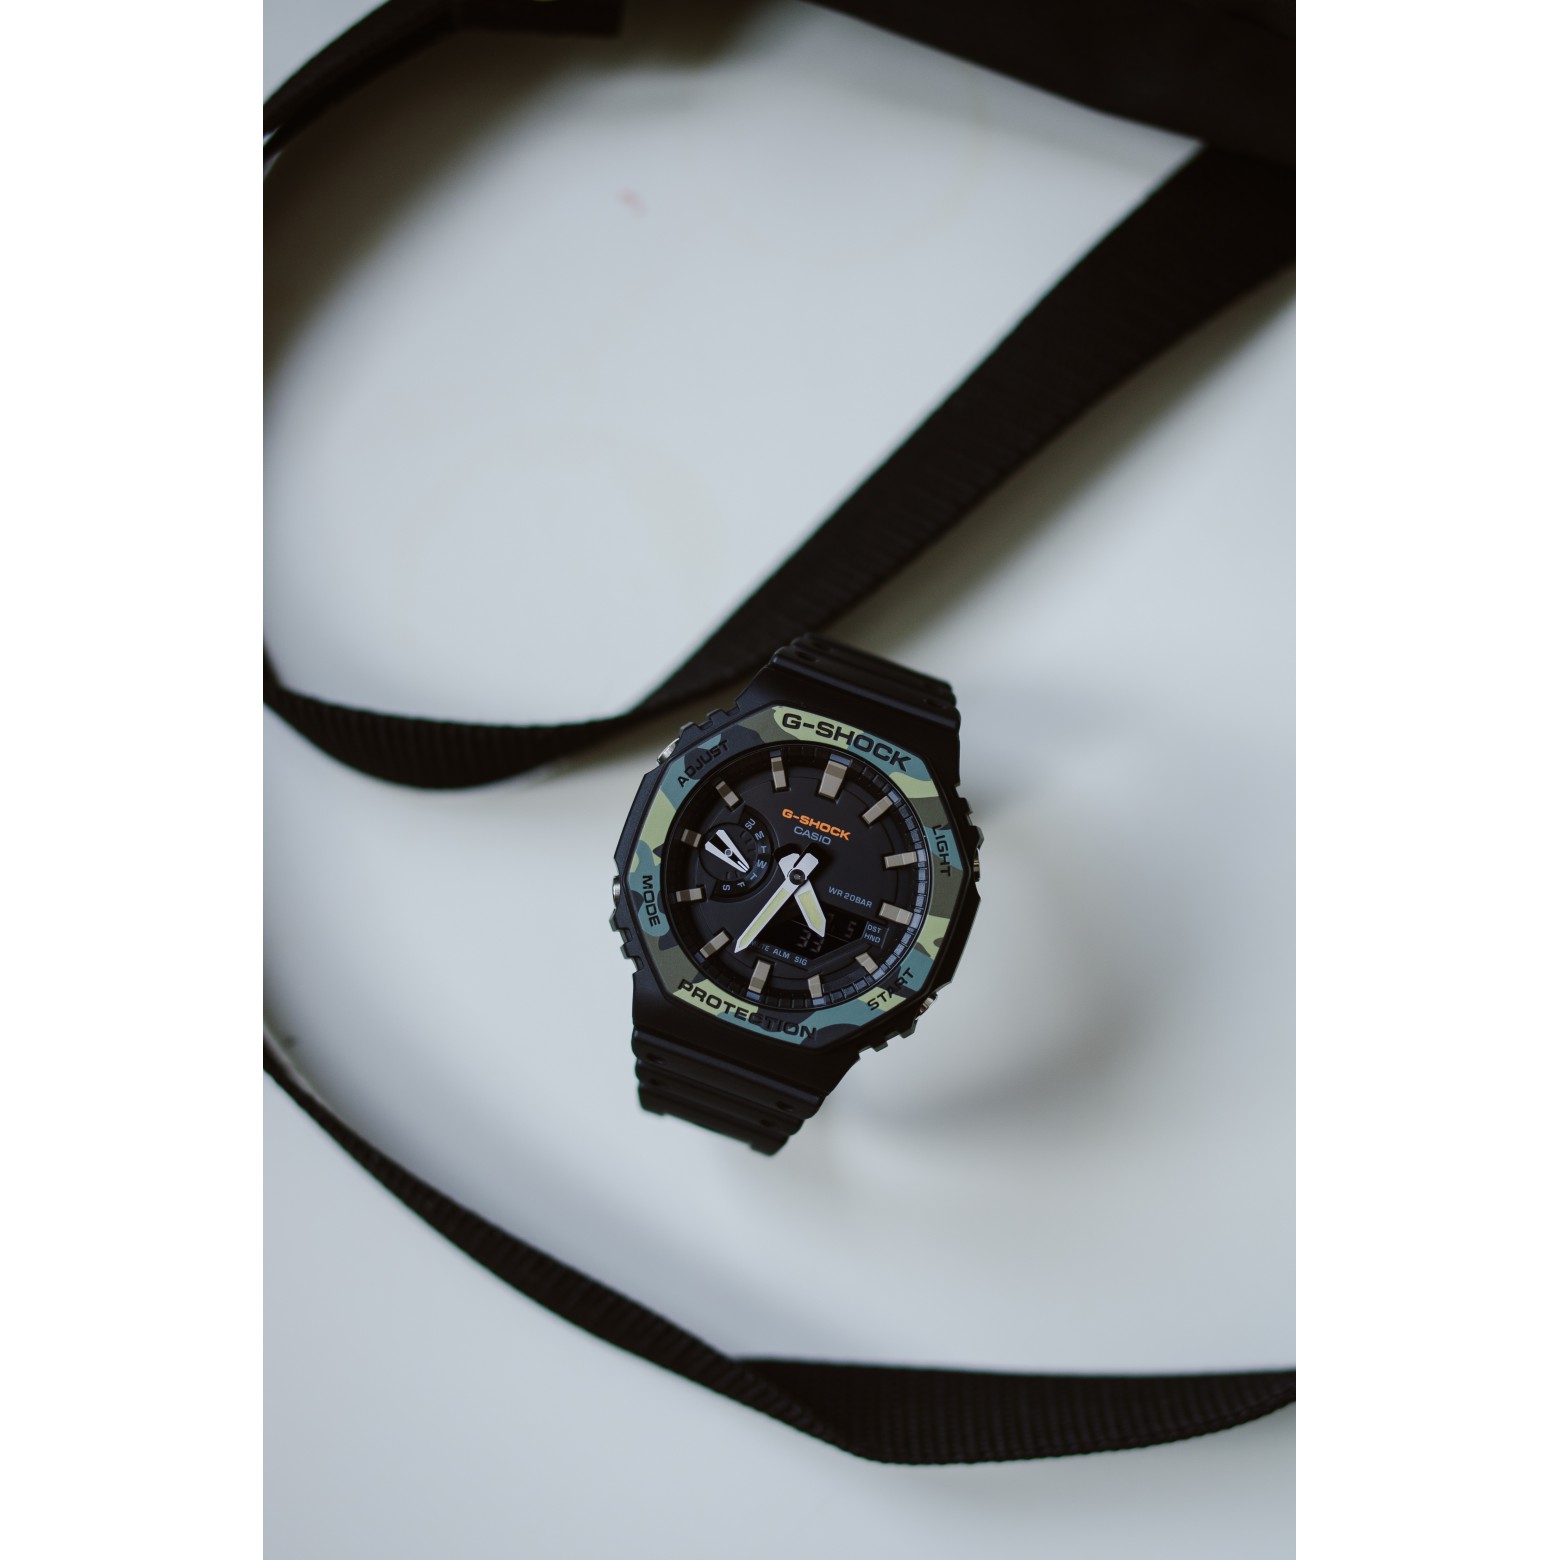 Наручные часы CASIO GA-2100SU-1A купить в официальном интернет-магазине  TIME TEAM по выгодной цене в Красноярске и по всей России. Бесплатная  доставка и 2 года гарантии от